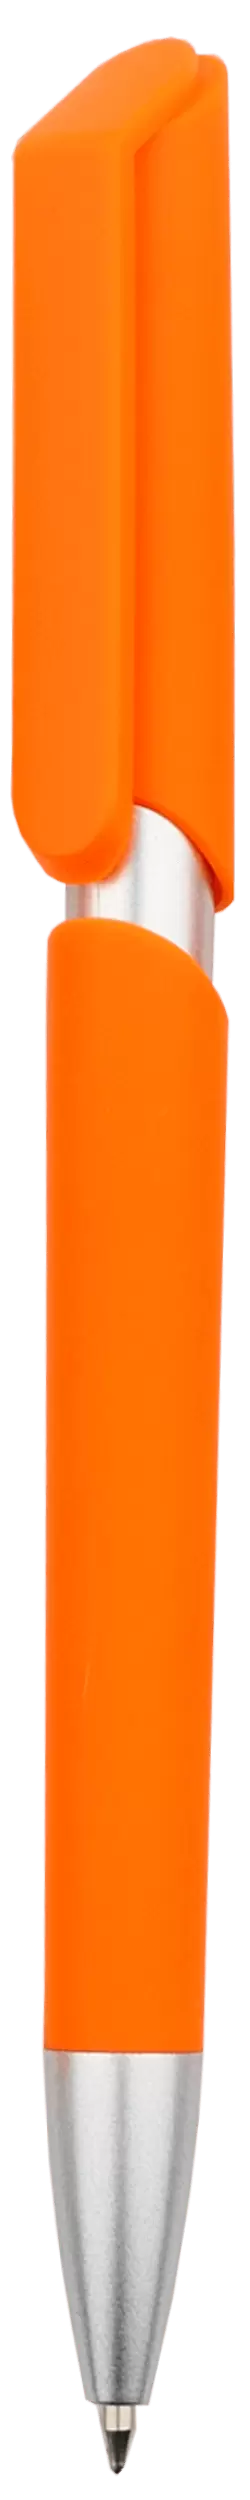 Ручка ZOOM SOFT Оранжевая 2020.05